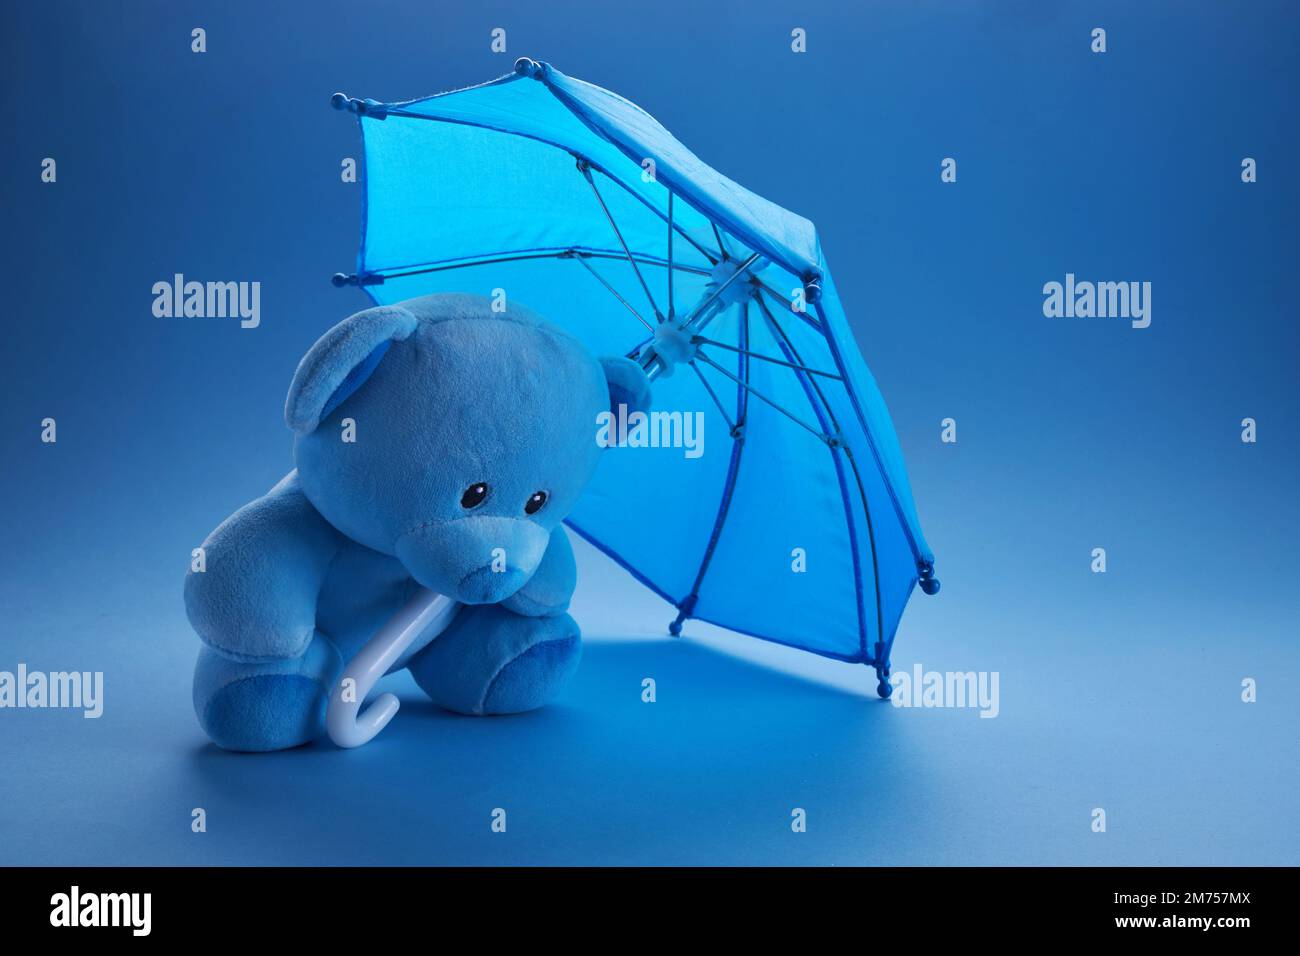 Ours en peluche bleu avec parapluie sur fond bleu. Concept blue monday. Banque D'Images